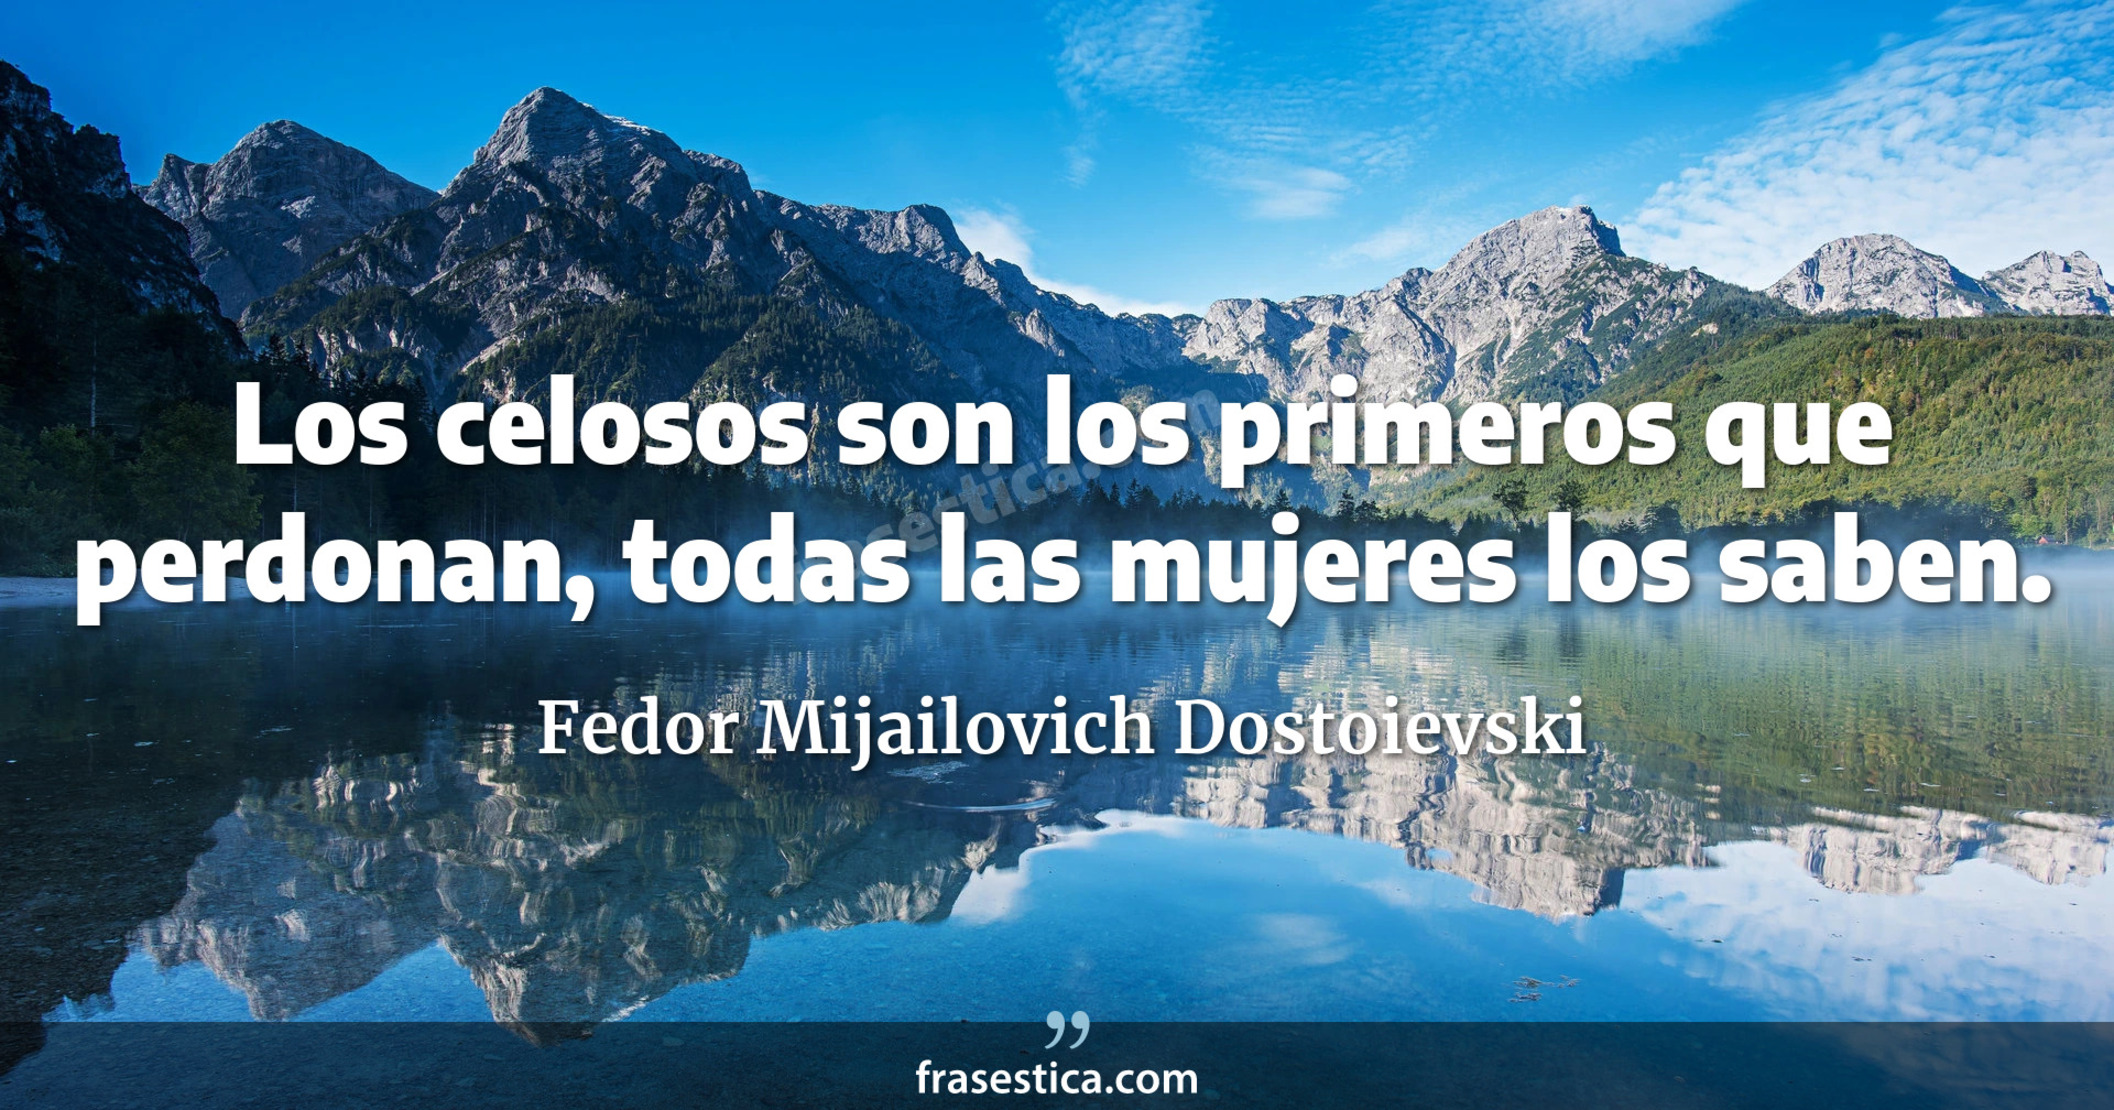 Los celosos son los primeros que perdonan, todas las mujeres los saben. - Fedor Mijailovich Dostoievski